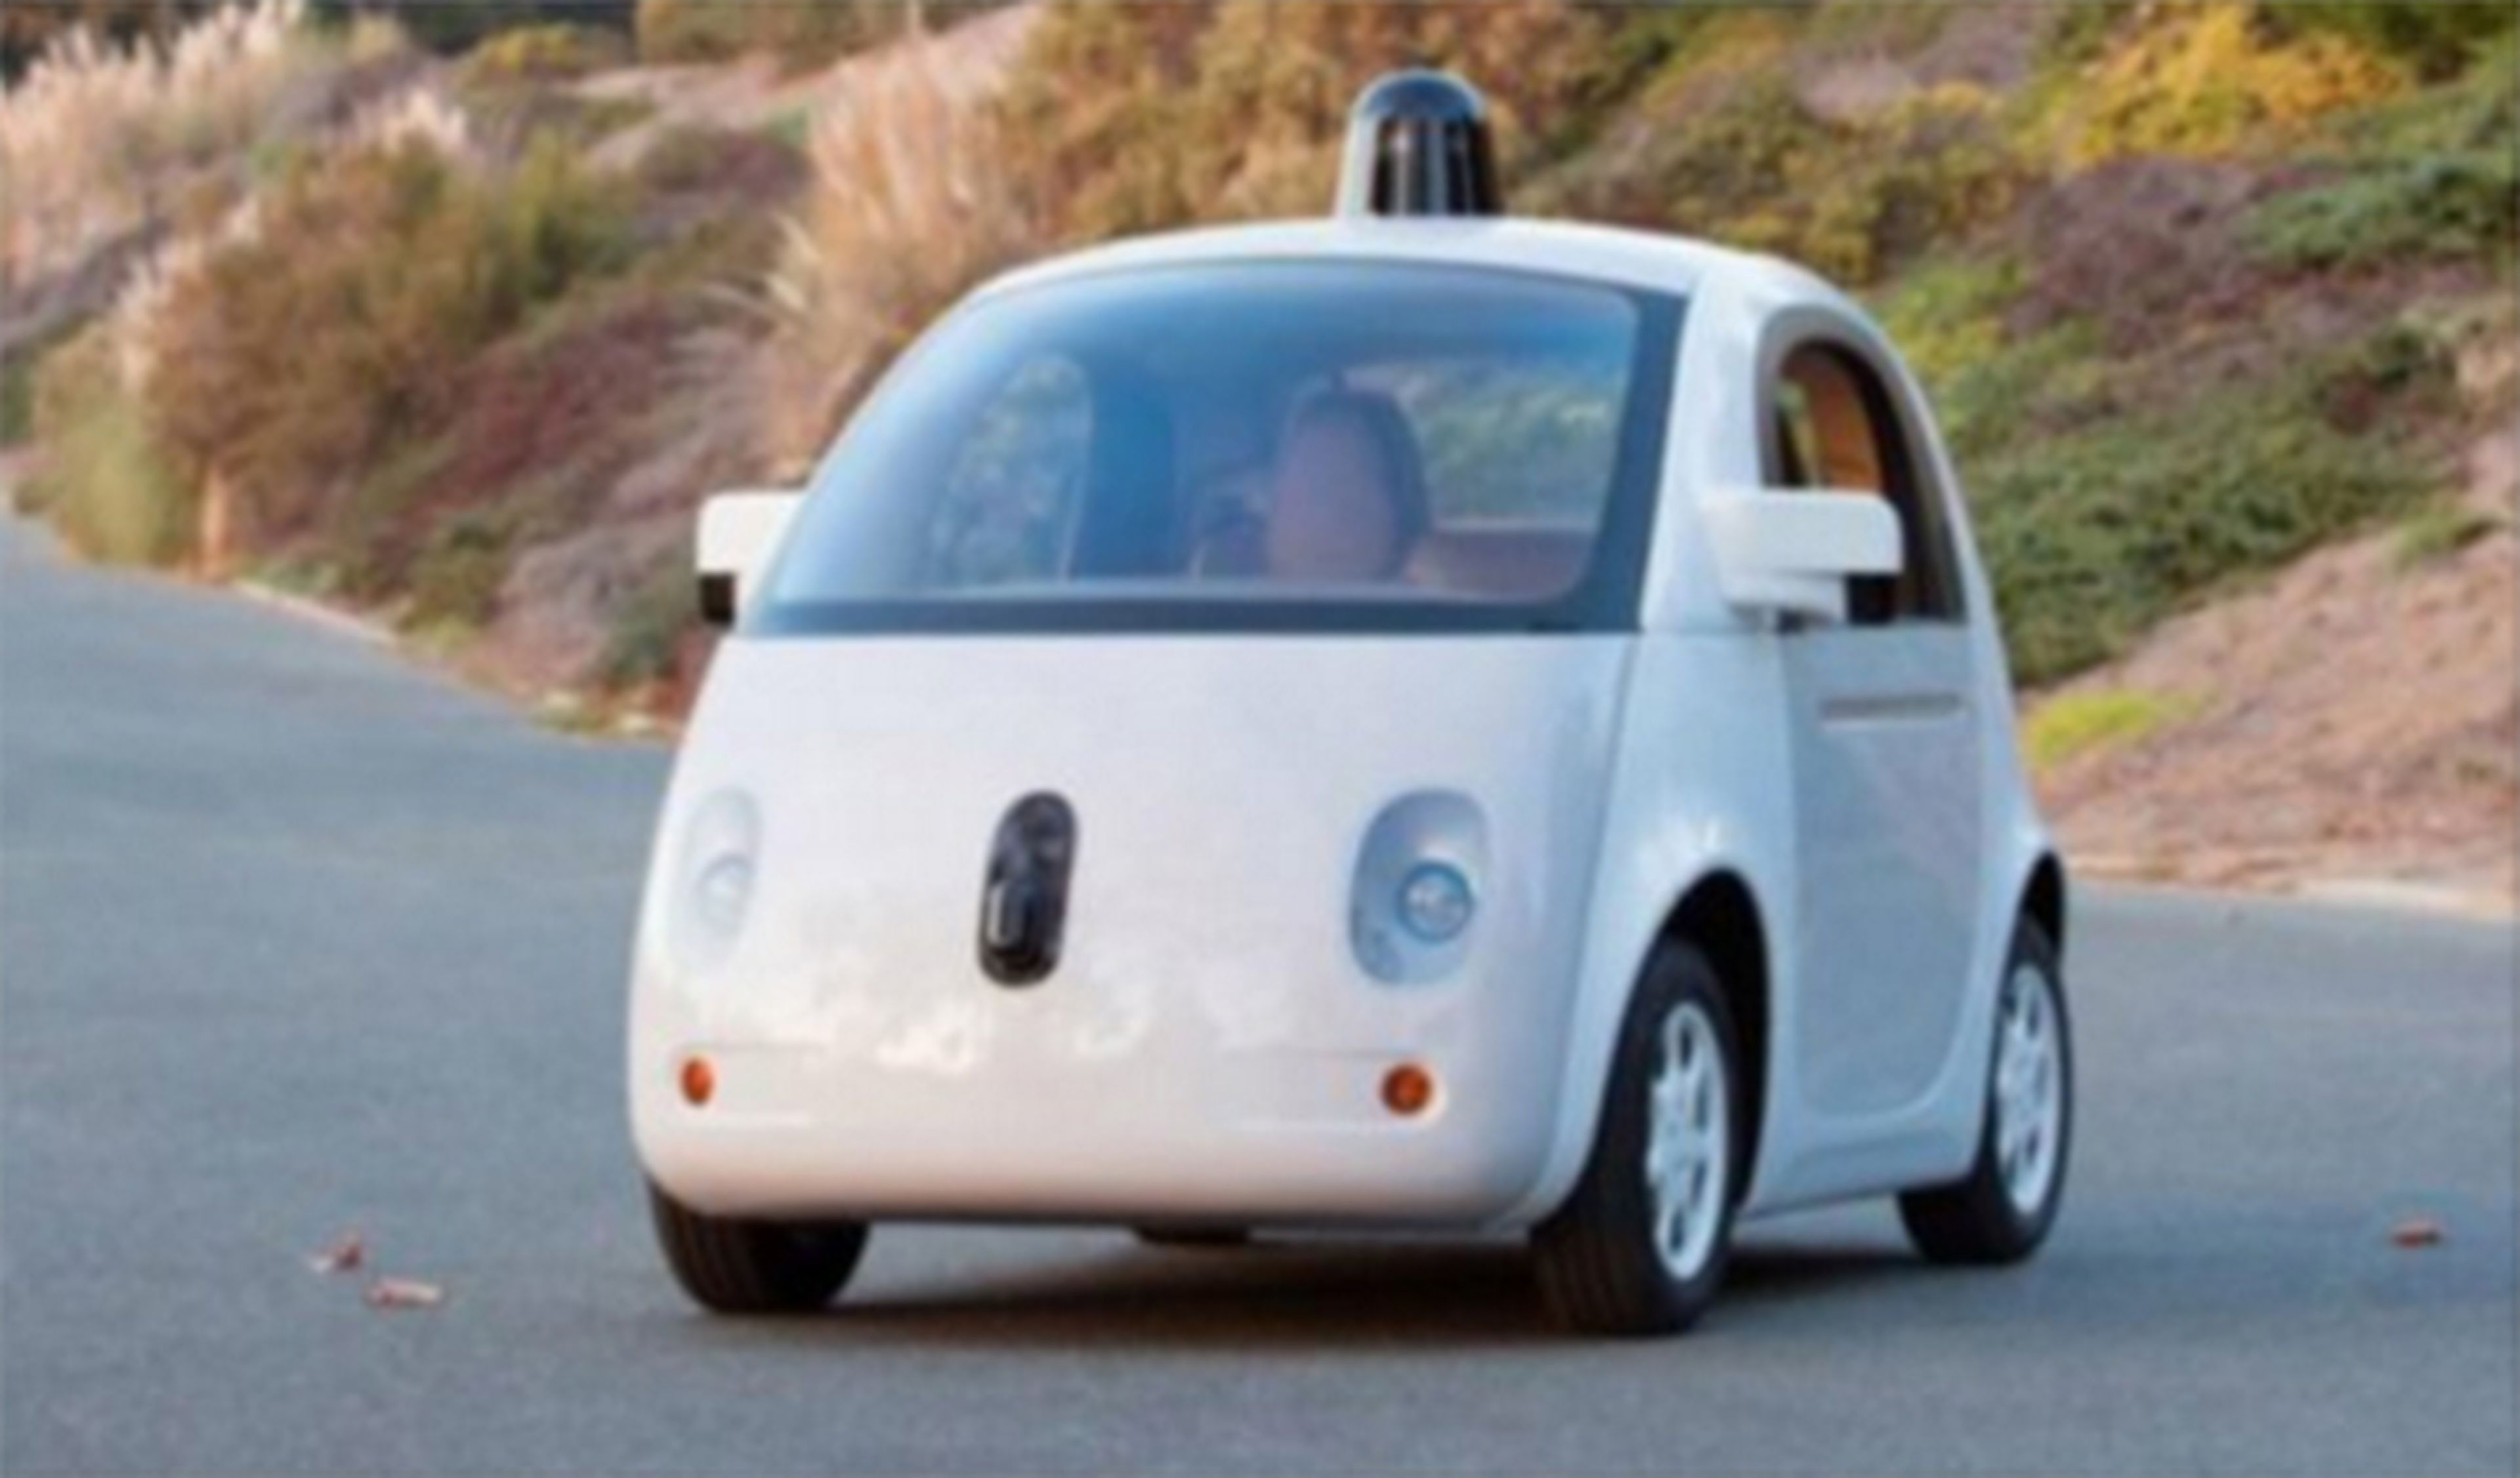 Google busca trabajadores para construir su coche autónomo